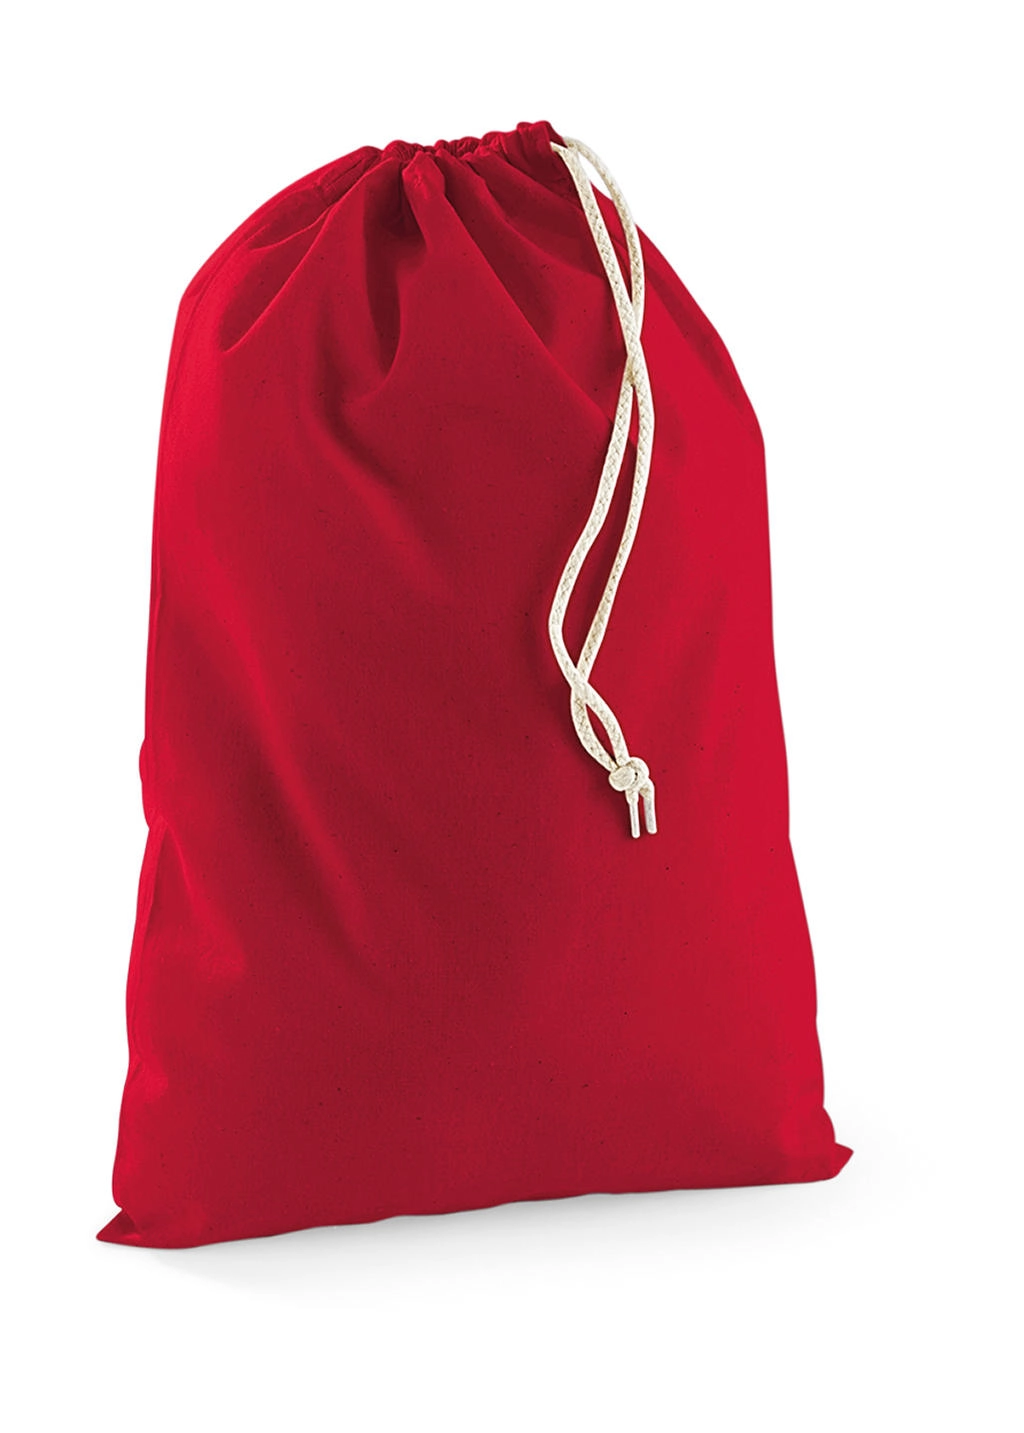 Cotton Stuff Bag zum Besticken und Bedrucken in der Farbe Classic Red mit Ihren Logo, Schriftzug oder Motiv.